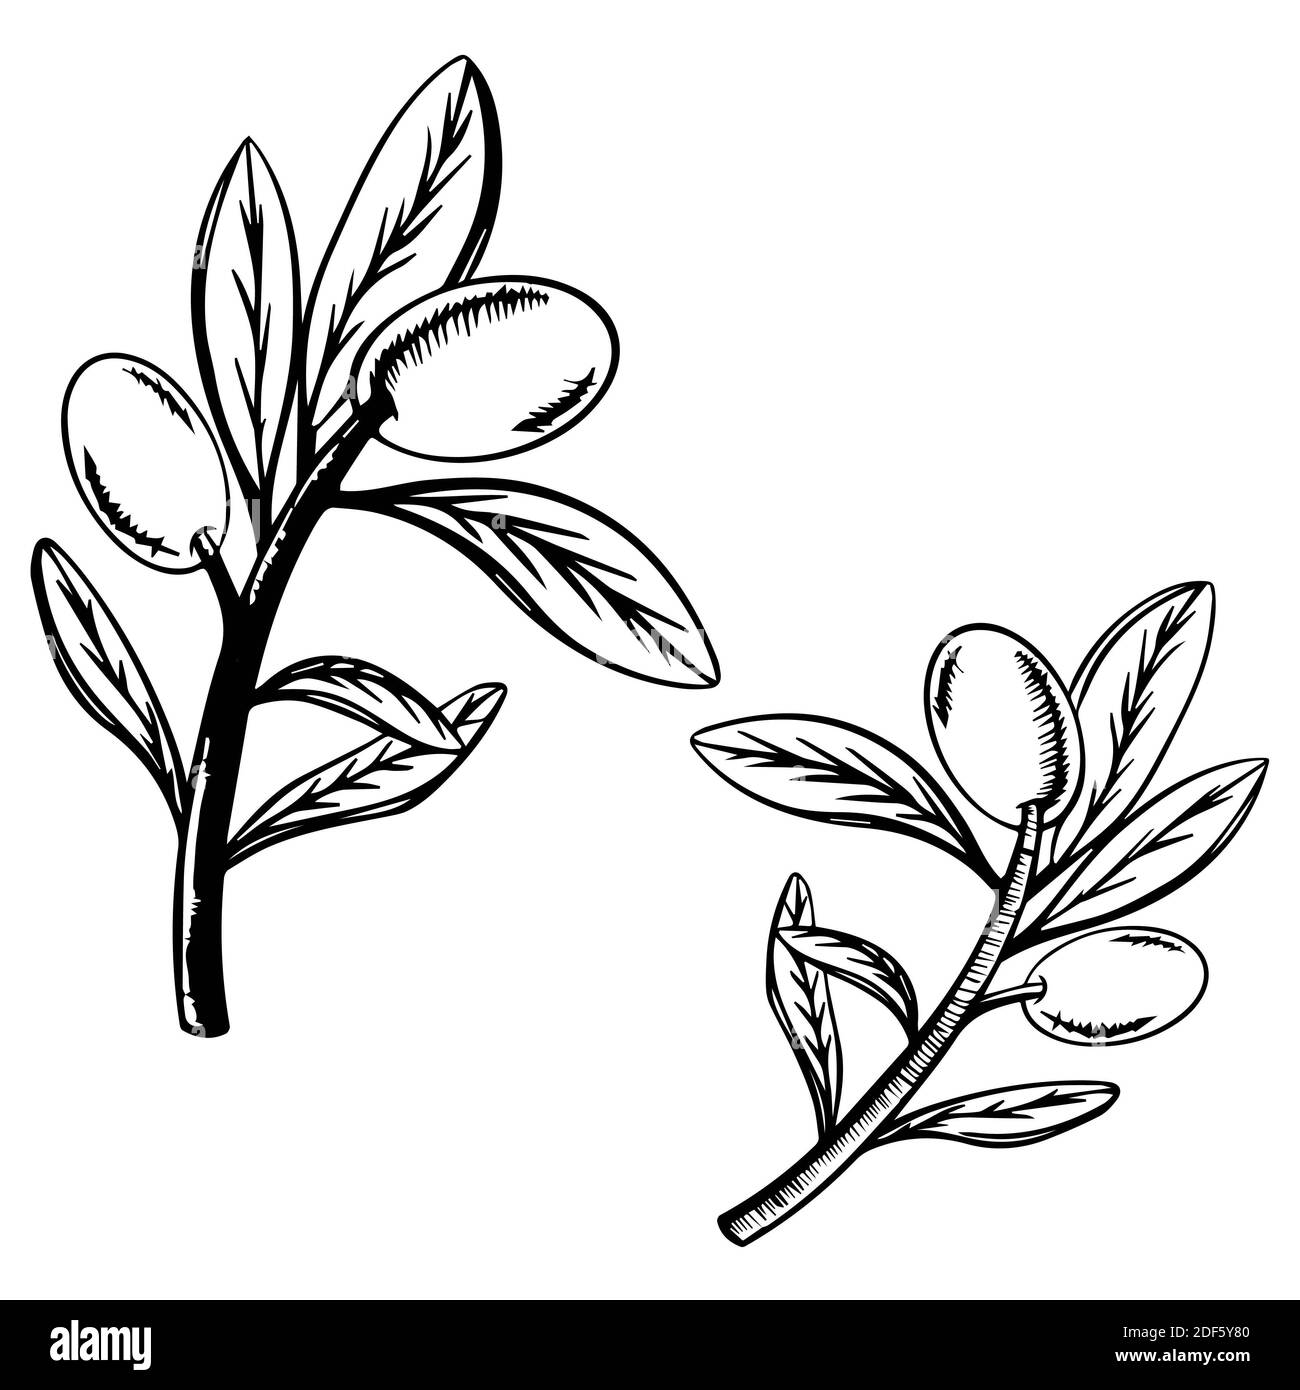 Grande branche d'olive isolée sur fond blanc, illustration vectorielle dessinée à la main. Symbole ou logo pour l'étiquette de bouteille d'huile d'olive ou la cuisine italienne Banque D'Images